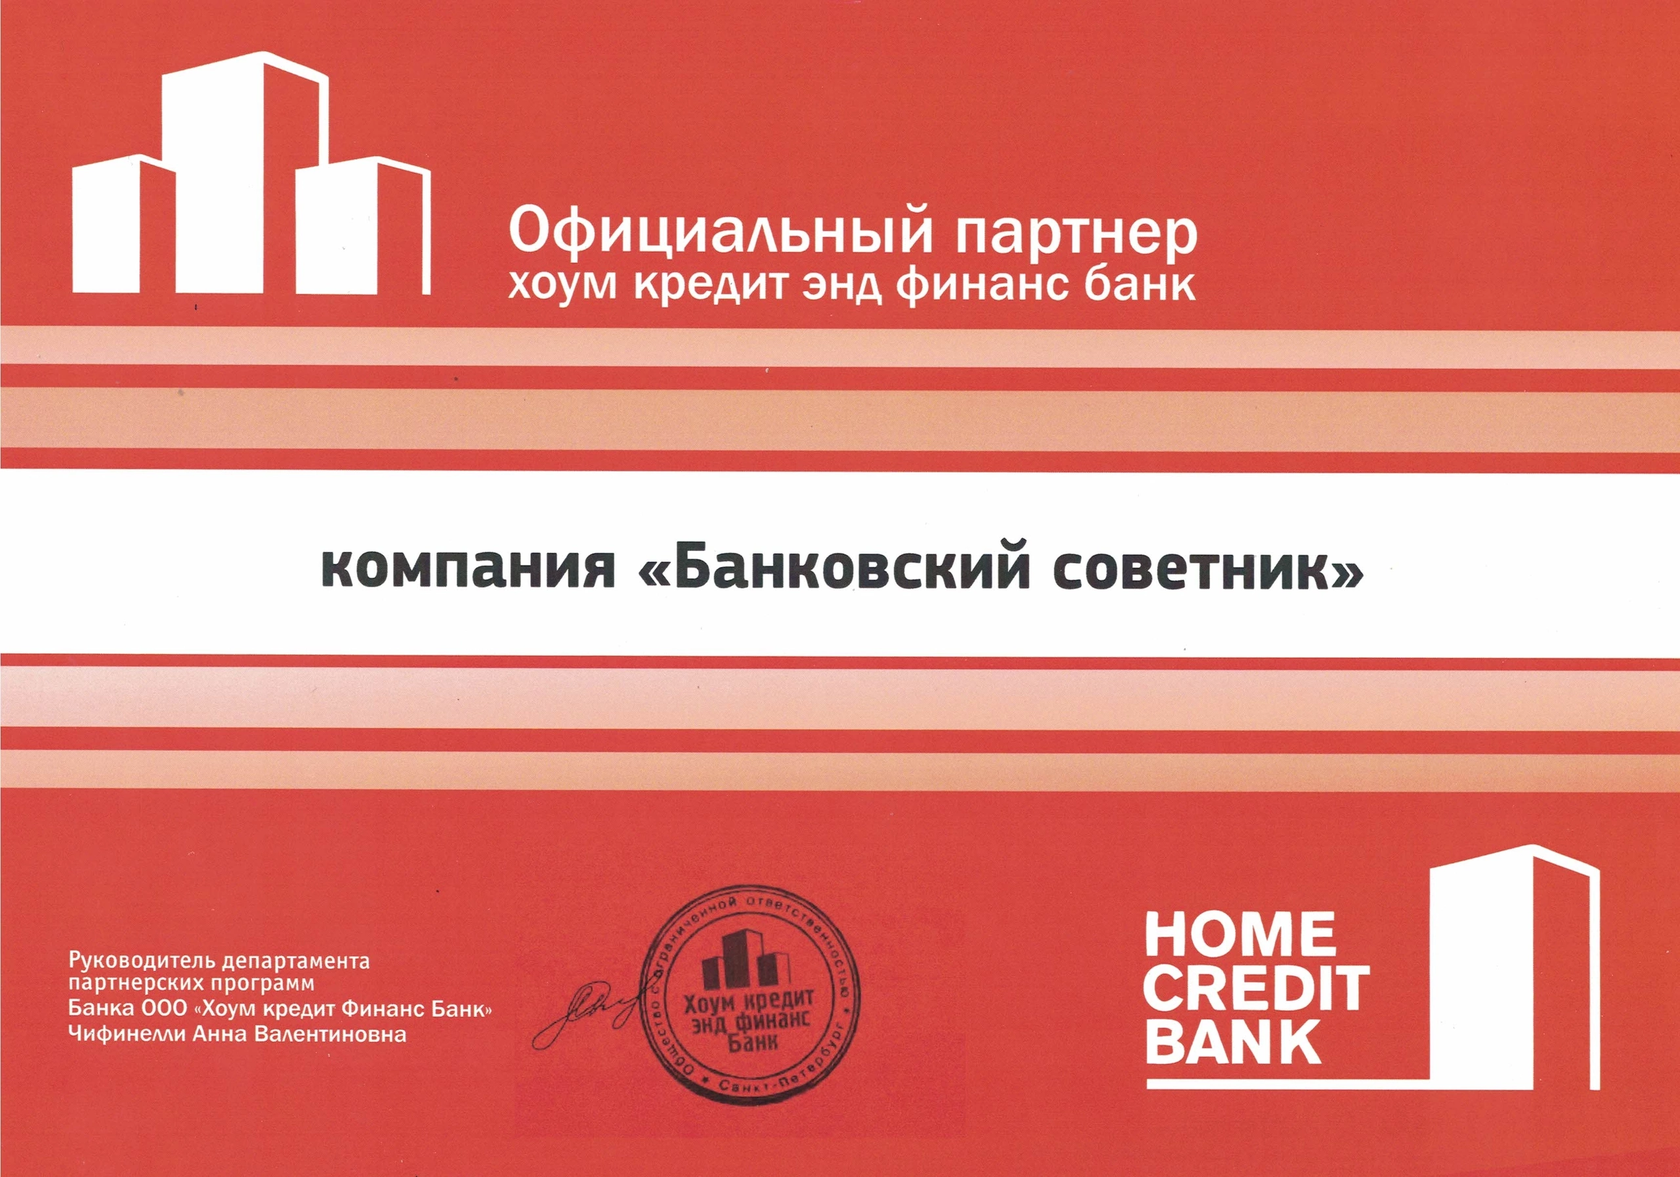 Хоум банк и совкомбанк объединились. Финансовая компания партнеры. Банк партнёр хоум банка.